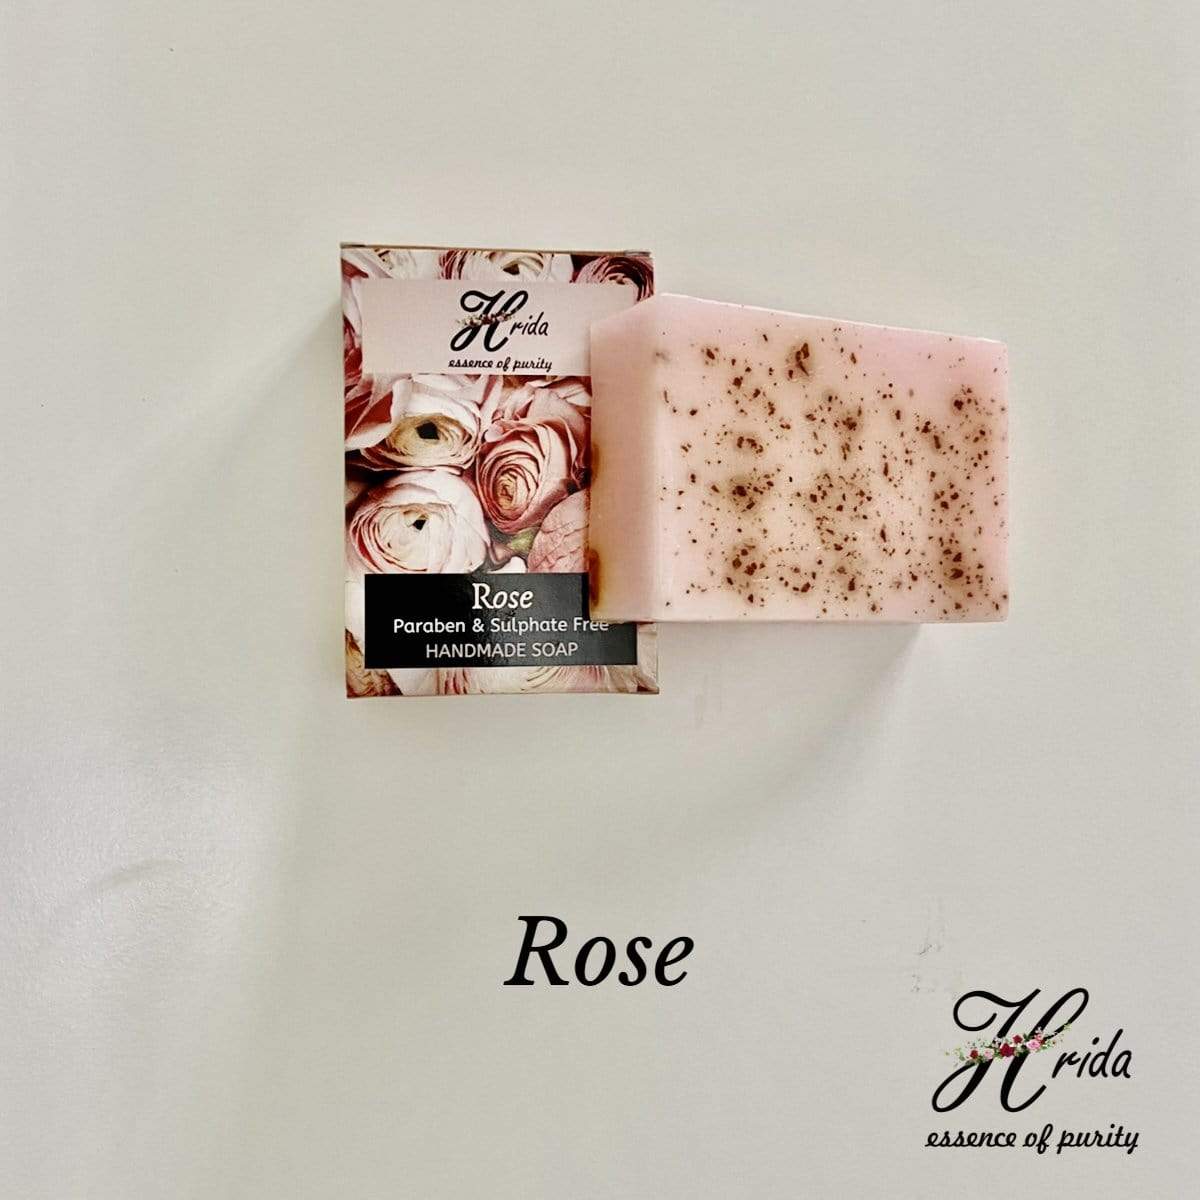 Hrida Rose Handmade Soap - hfnl!fe